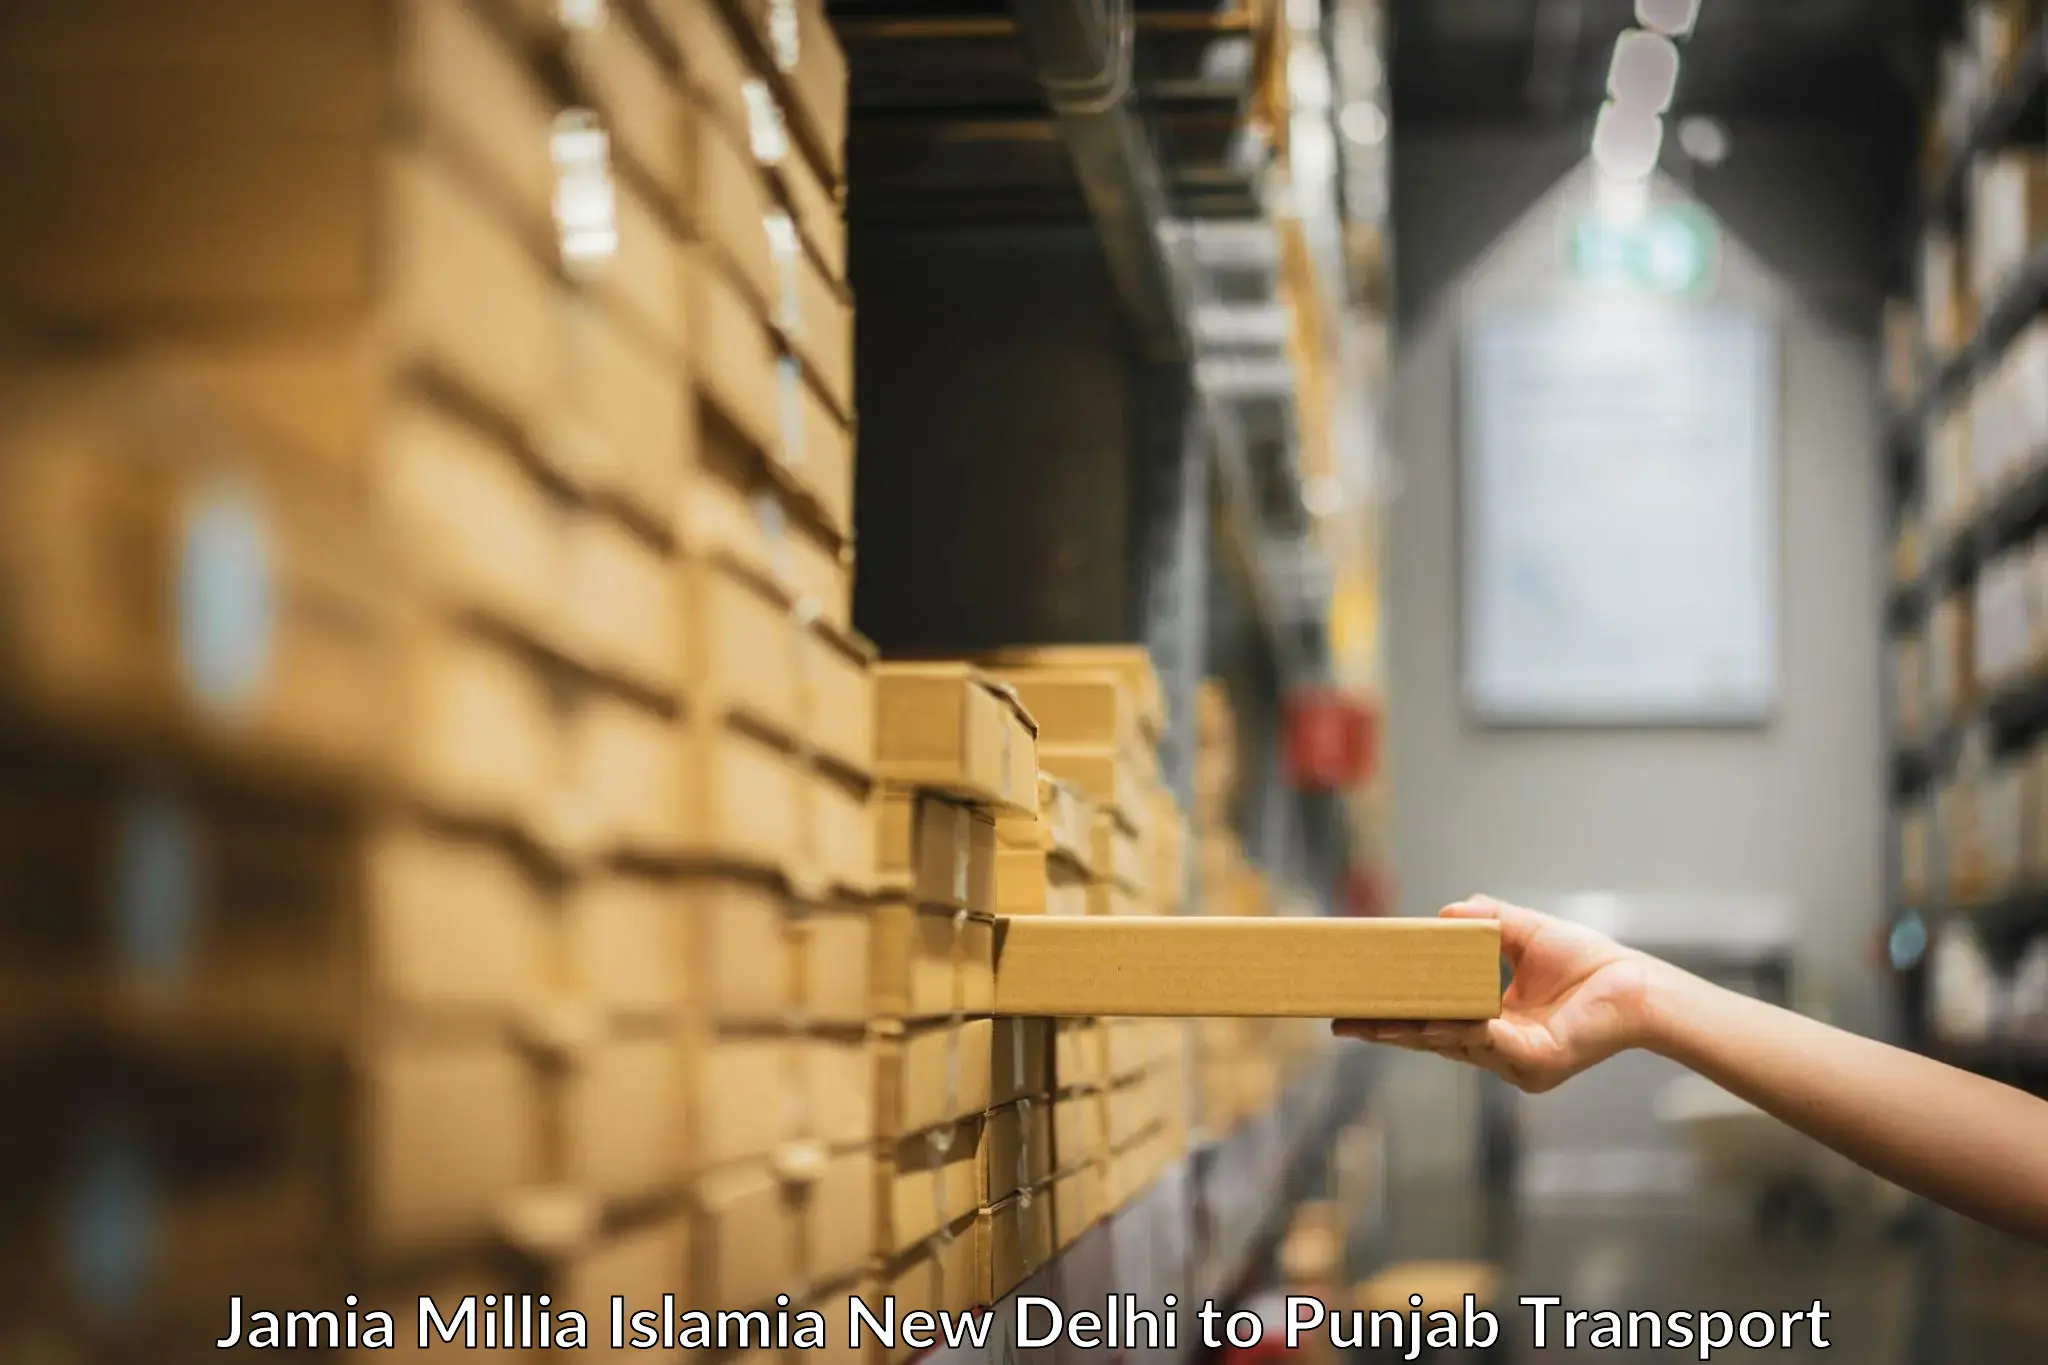 Express transport services Jamia Millia Islamia New Delhi to Sirhind Fatehgarh